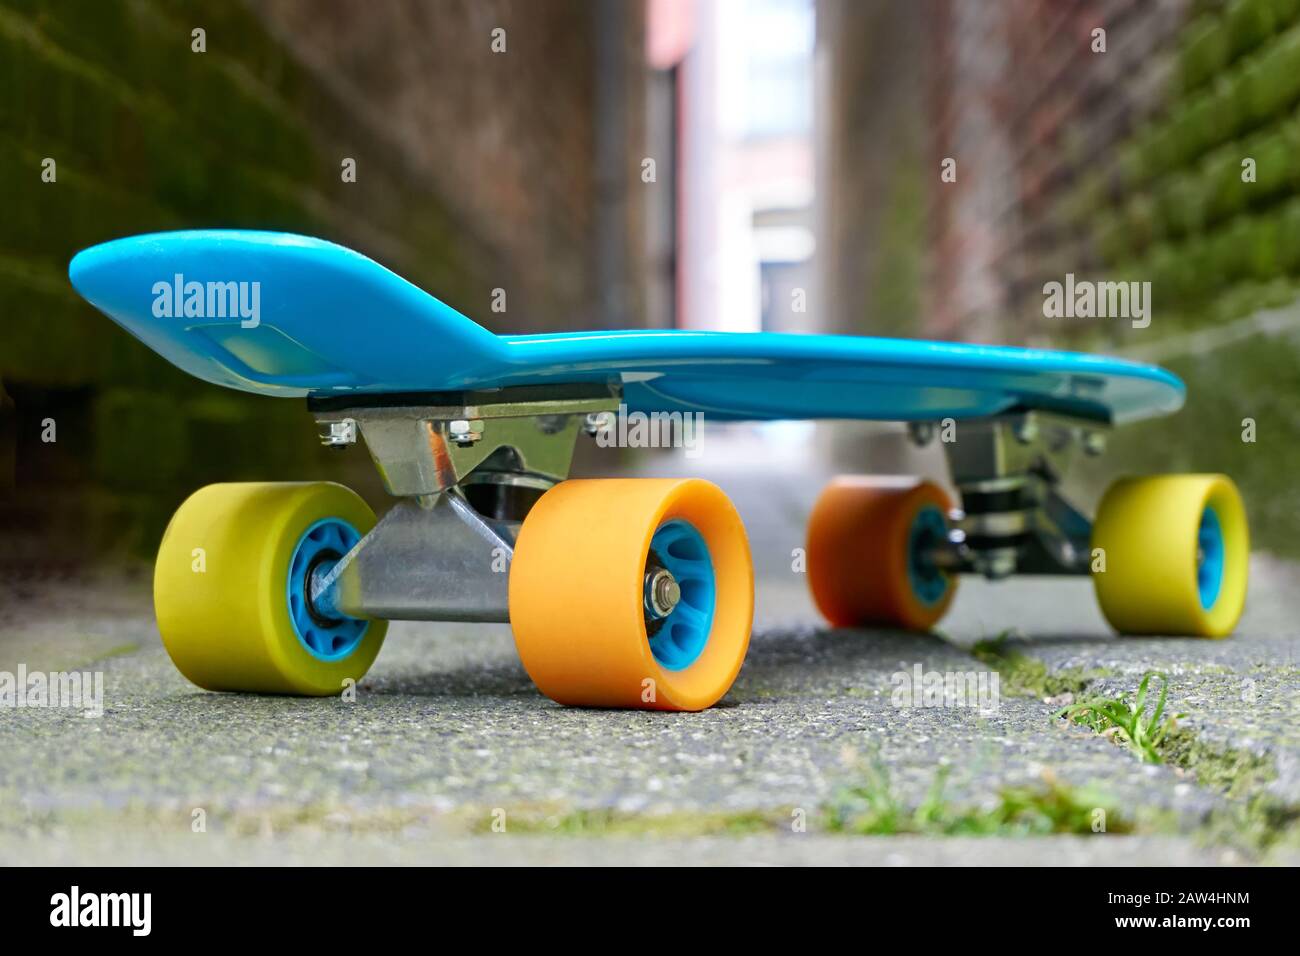 Mini bordo in plastica blu o skate board con ruote gialle e arancioni in un  vicolo con luce alla fine Foto stock - Alamy